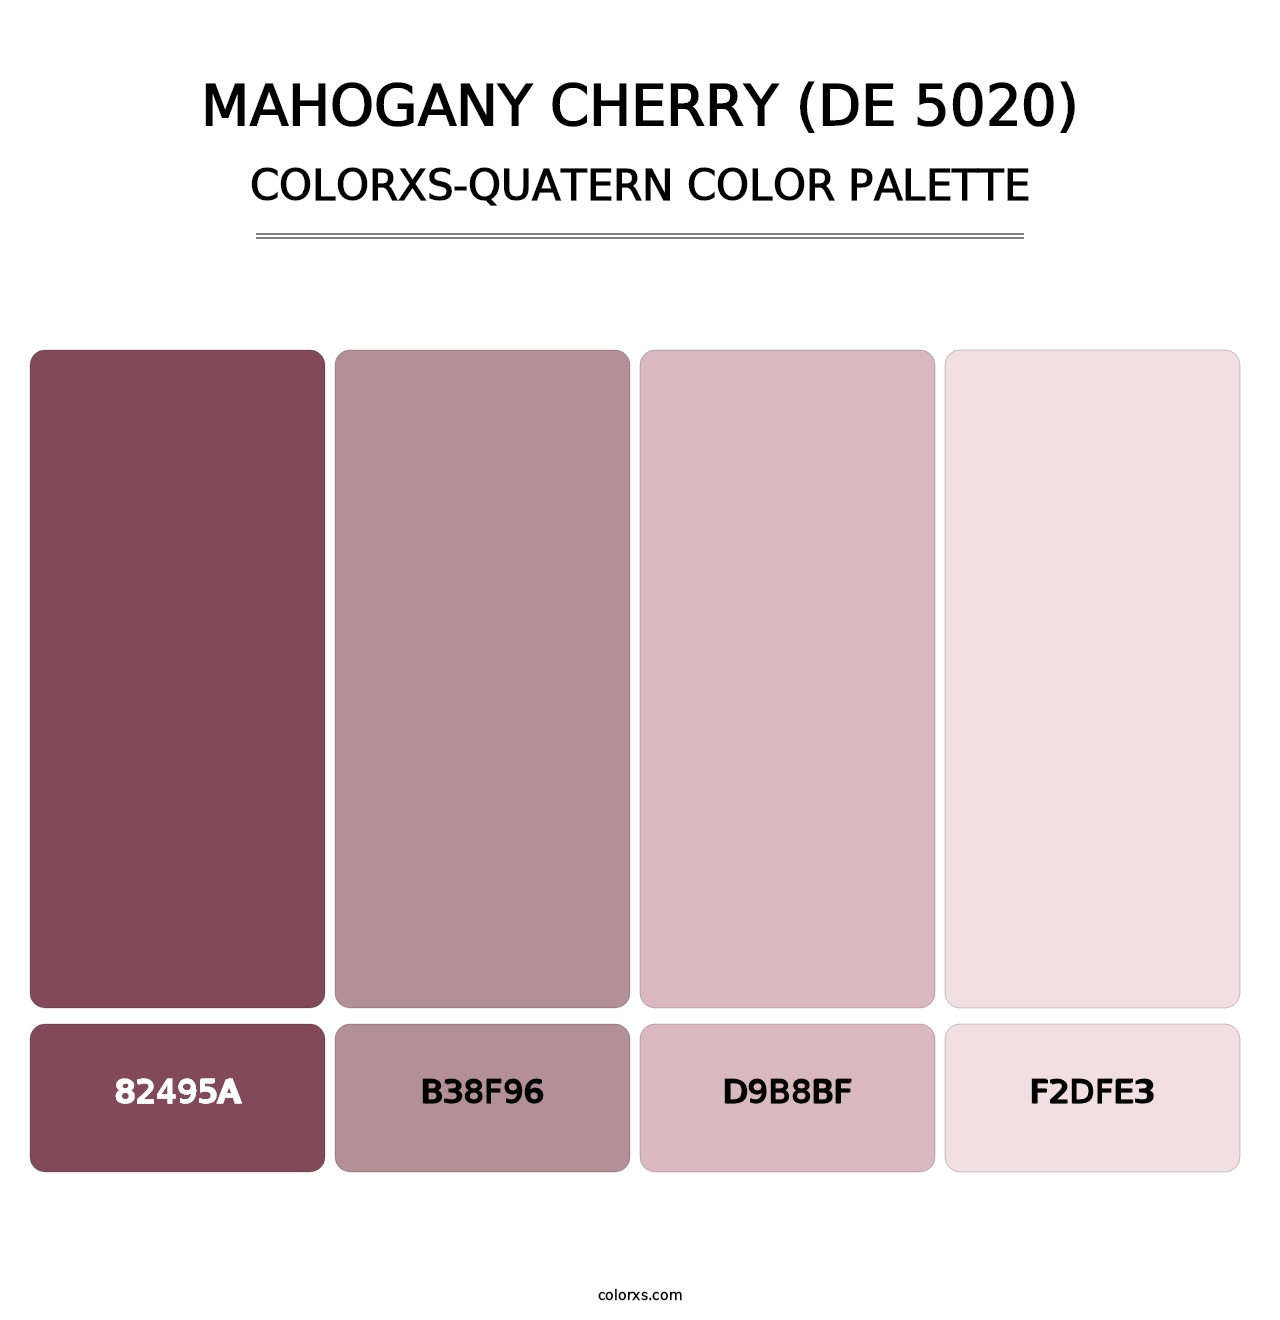 Mahogany Cherry (DE 5020) - Colorxs Quatern Palette